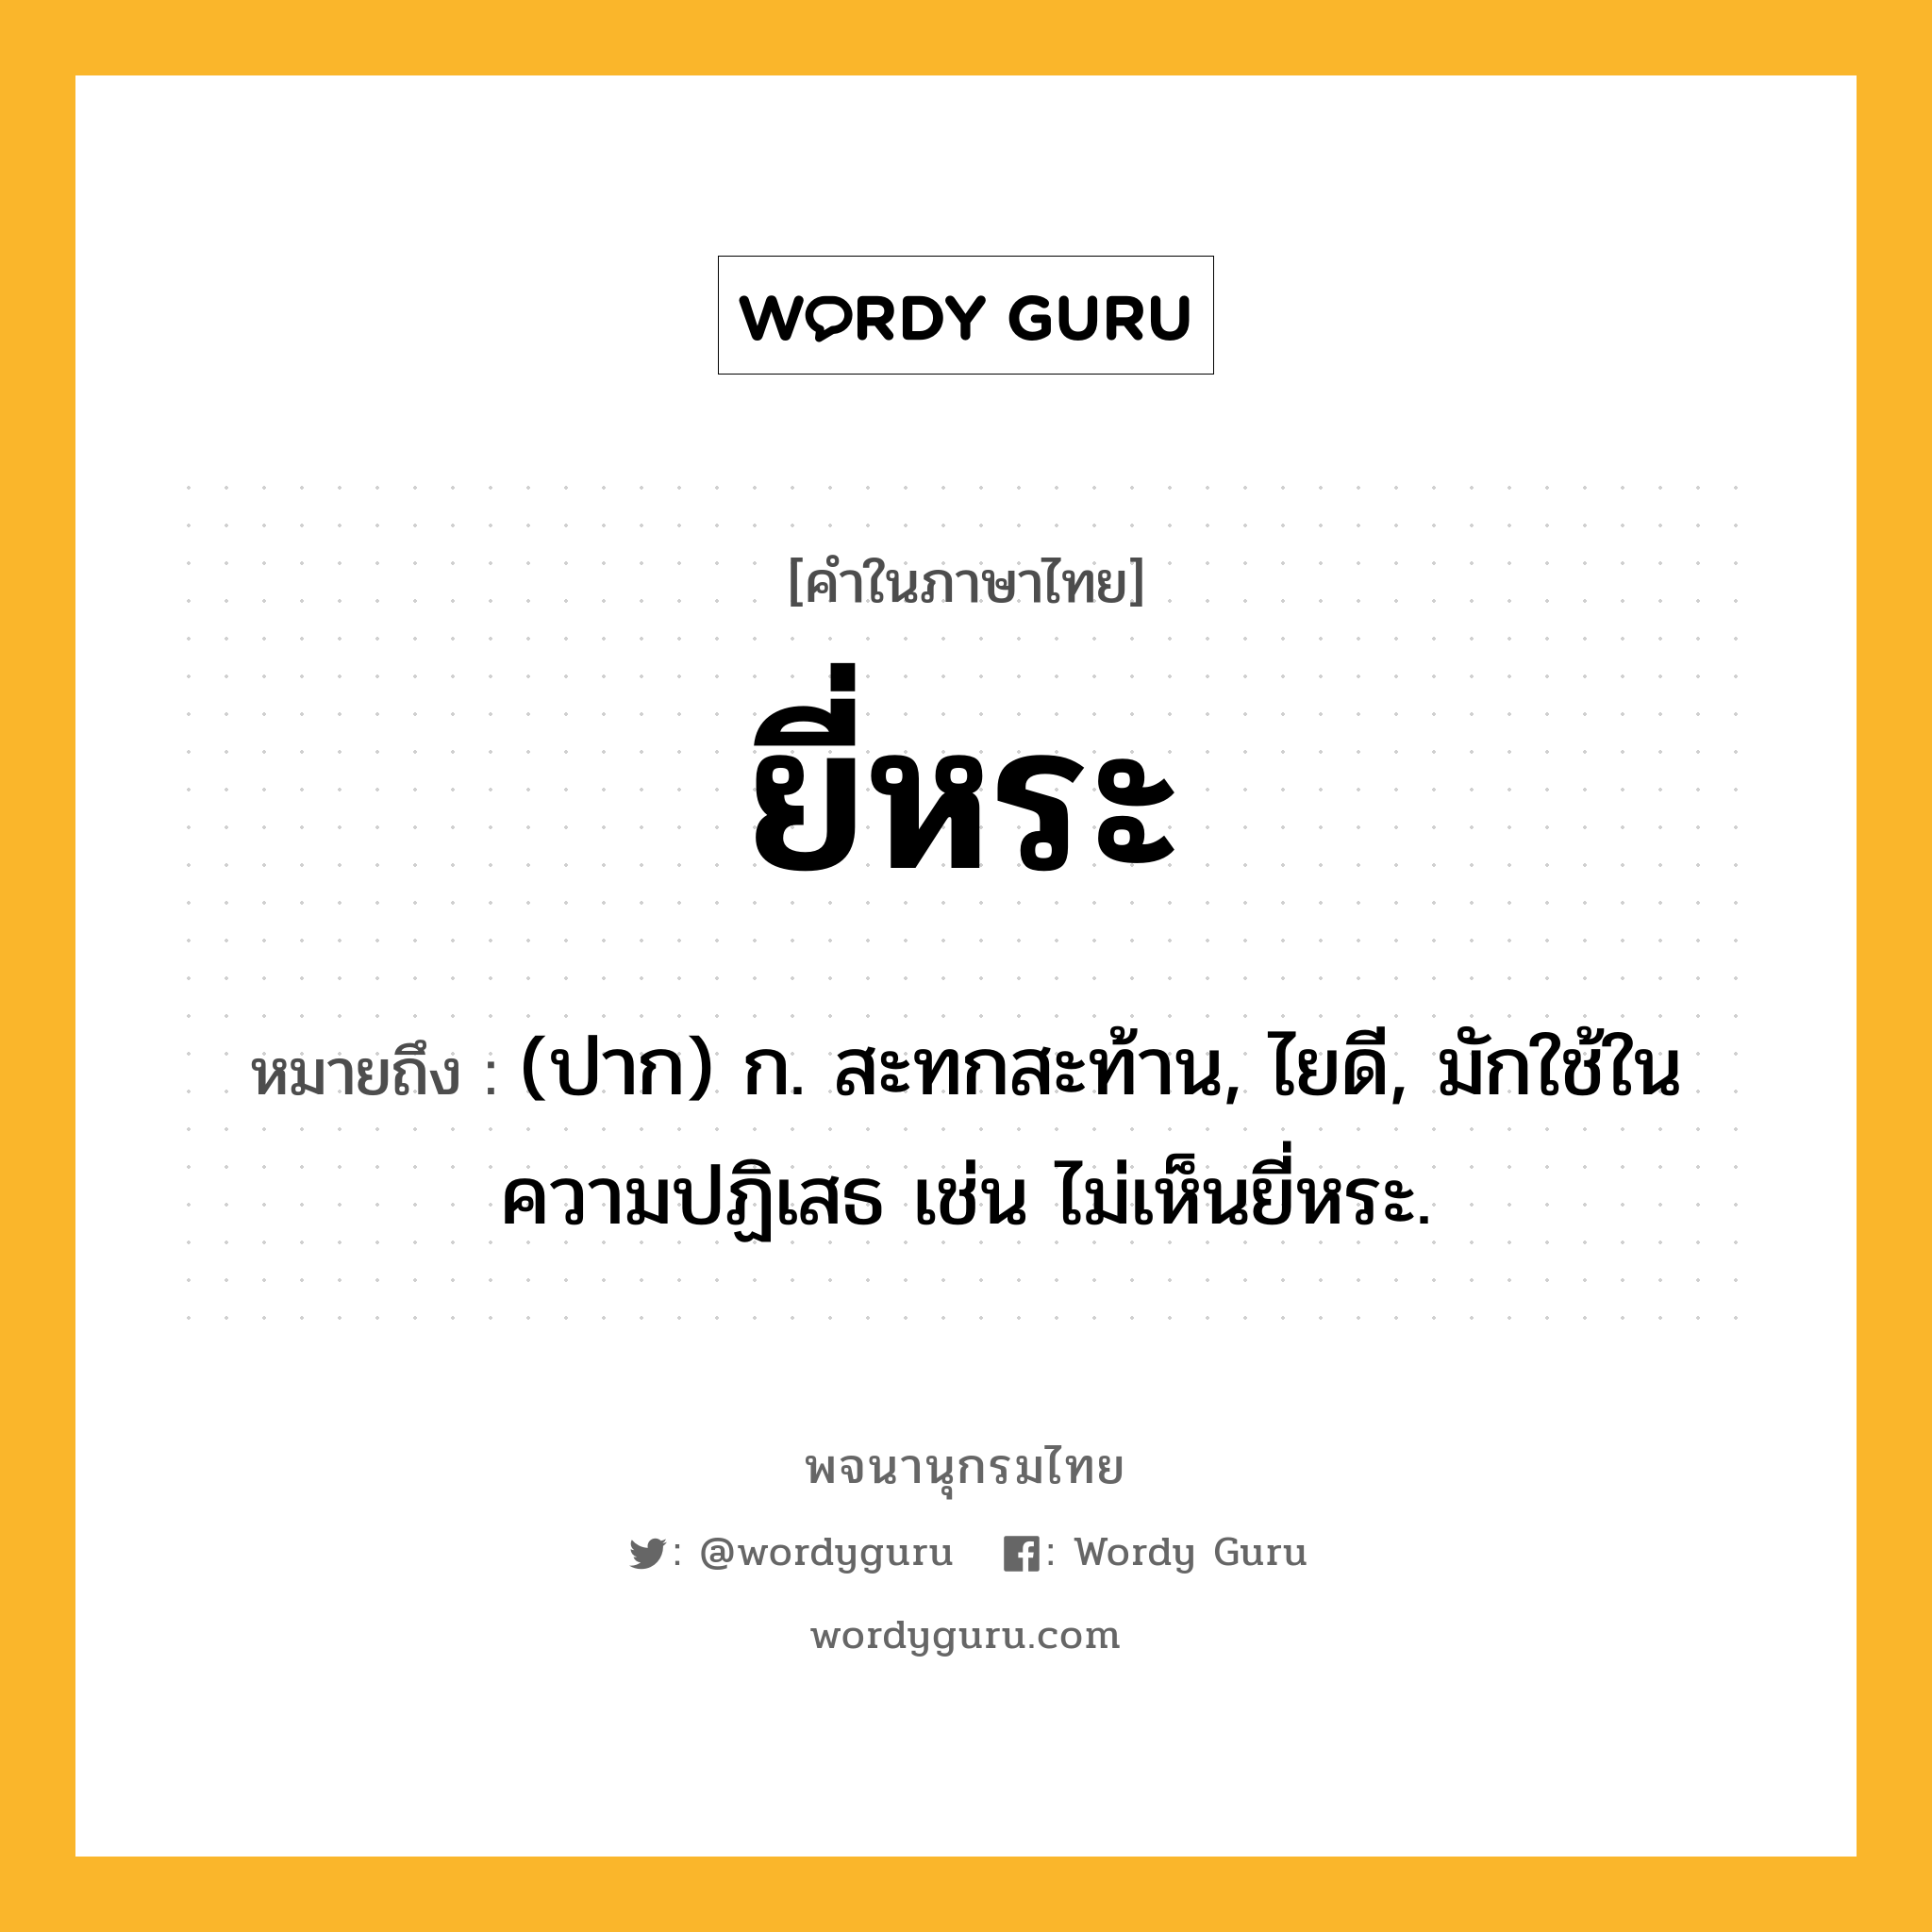 ยี่หระ หมายถึงอะไร?, คำในภาษาไทย ยี่หระ หมายถึง (ปาก) ก. สะทกสะท้าน, ไยดี, มักใช้ในความปฏิเสธ เช่น ไม่เห็นยี่หระ.